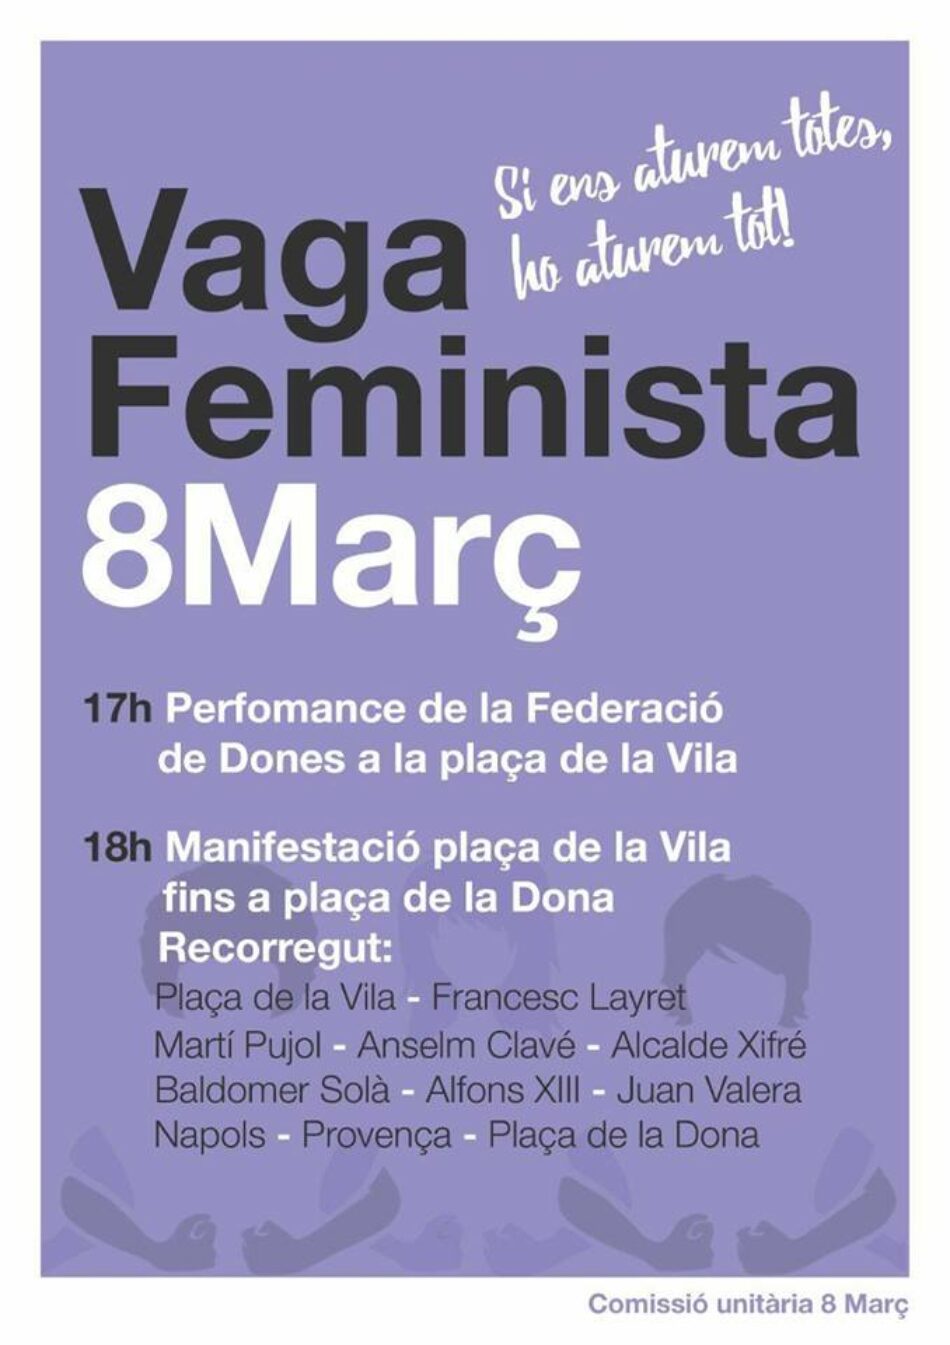 Badalona se suma a la convocatòria de vaga feminista amb motiu del 8 de març i crida a manifestar-nos juntes